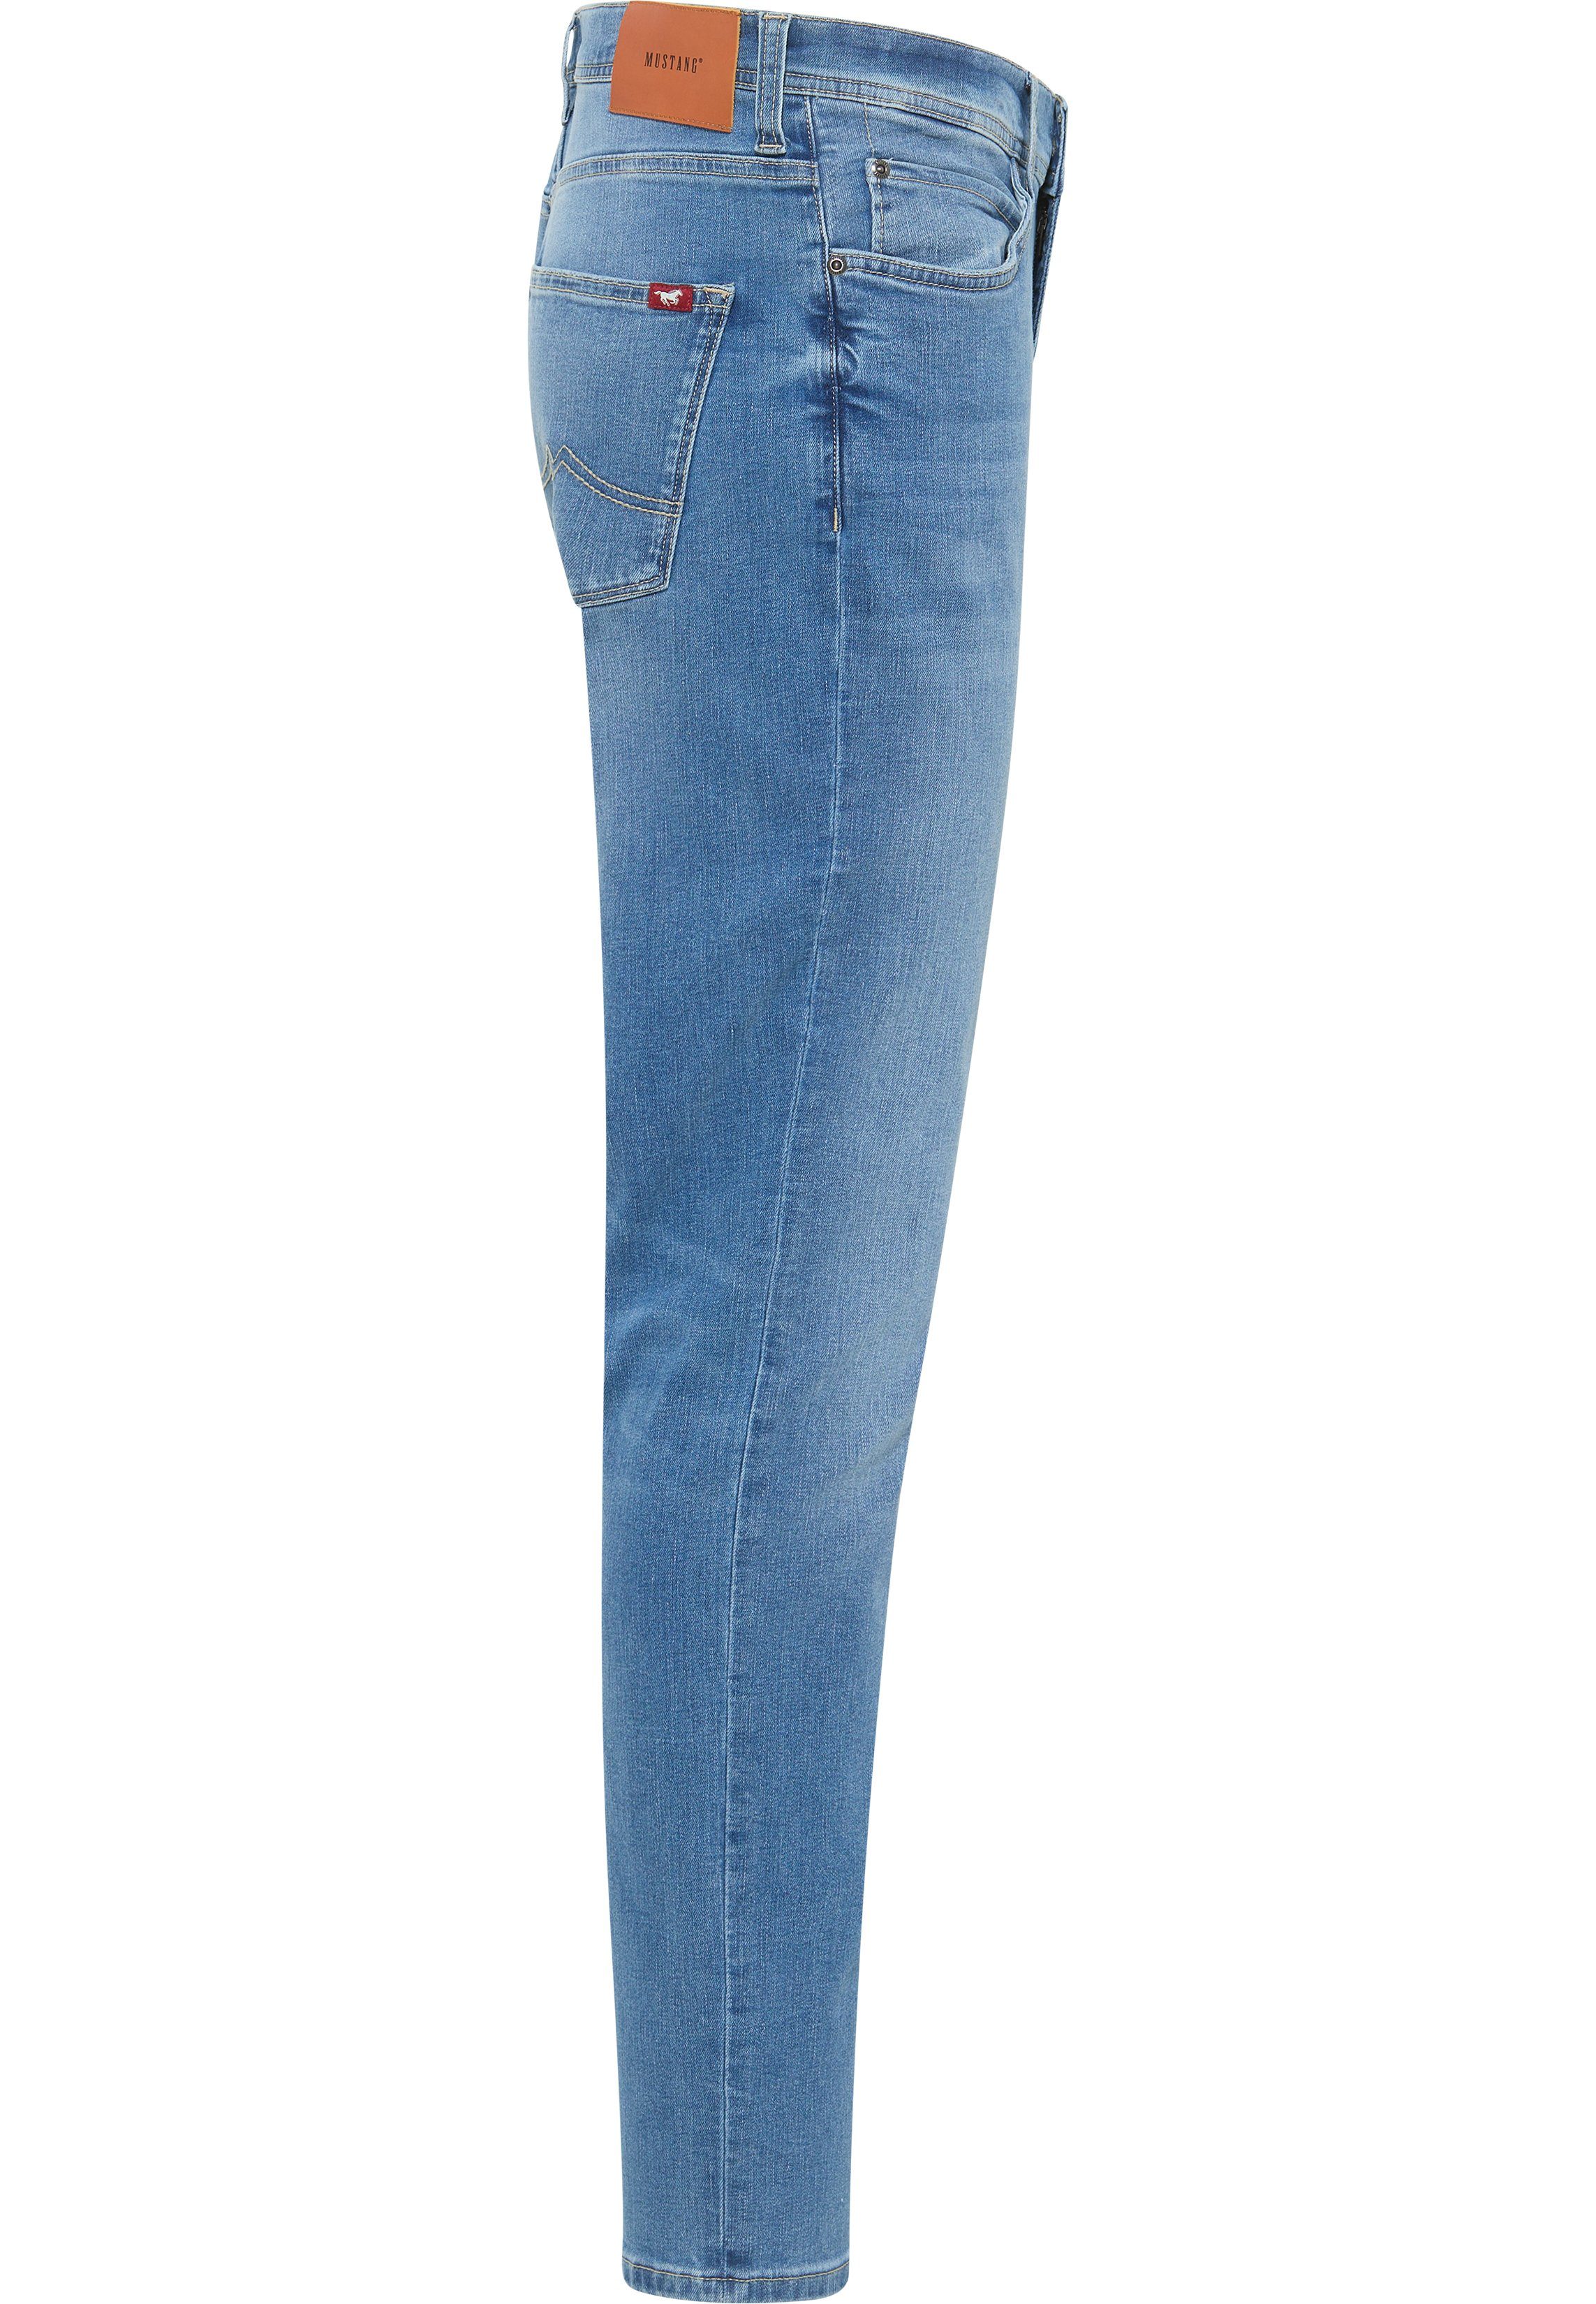 Vegas Style blau-5000432 MUSTANG Slim-fit-Jeans